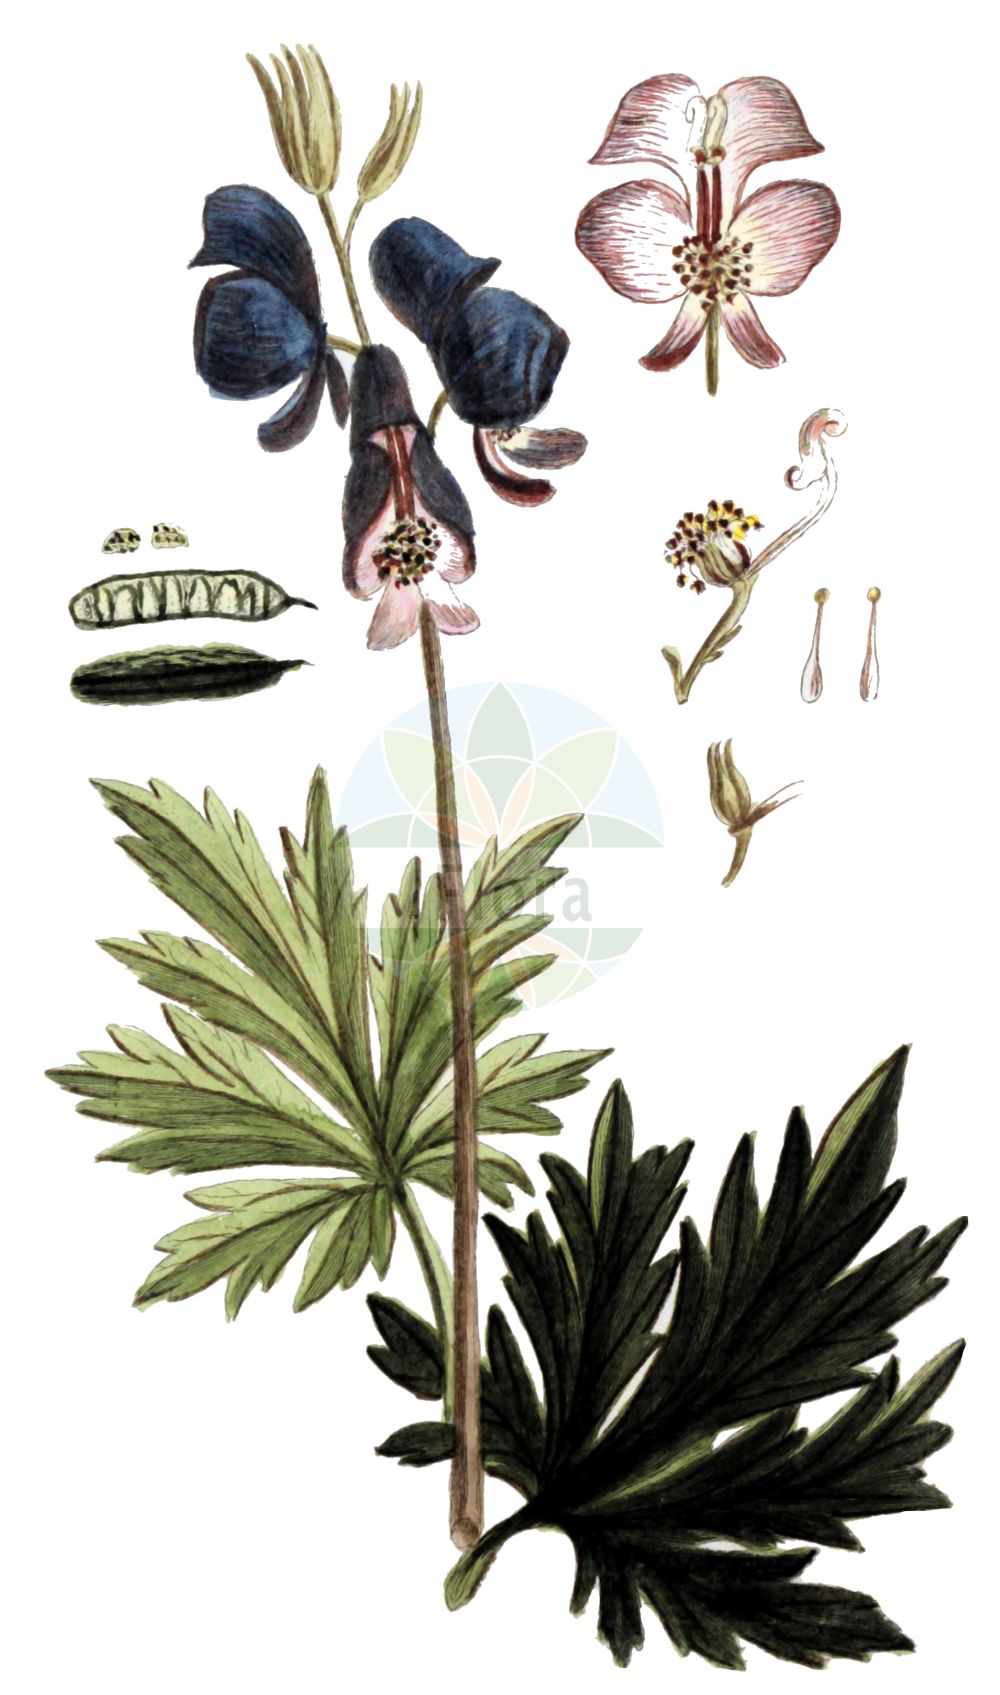 Historische Abbildung von Aconitum degenii (Bunter Eisenhut - Paniculate Aconite). Das Bild zeigt Blatt, Bluete, Frucht und Same. ---- Historical Drawing of Aconitum degenii (Bunter Eisenhut - Paniculate Aconite). The image is showing leaf, flower, fruit and seed.(Aconitum degenii,Bunter Eisenhut,Paniculate Aconite,Aconitum degenii,Aconitum variegatum subsp. paniculatum,Bunter Eisenhut,Rispen-Eisenhut,Paniculate Aconite,Aconitum,Eisenhut,Monkshood,Ranunculaceae,Hahnenfußgewächse,Buttercup family,Blatt,Bluete,Frucht,Same,leaf,flower,fruit,seed,Zorn (1781f))